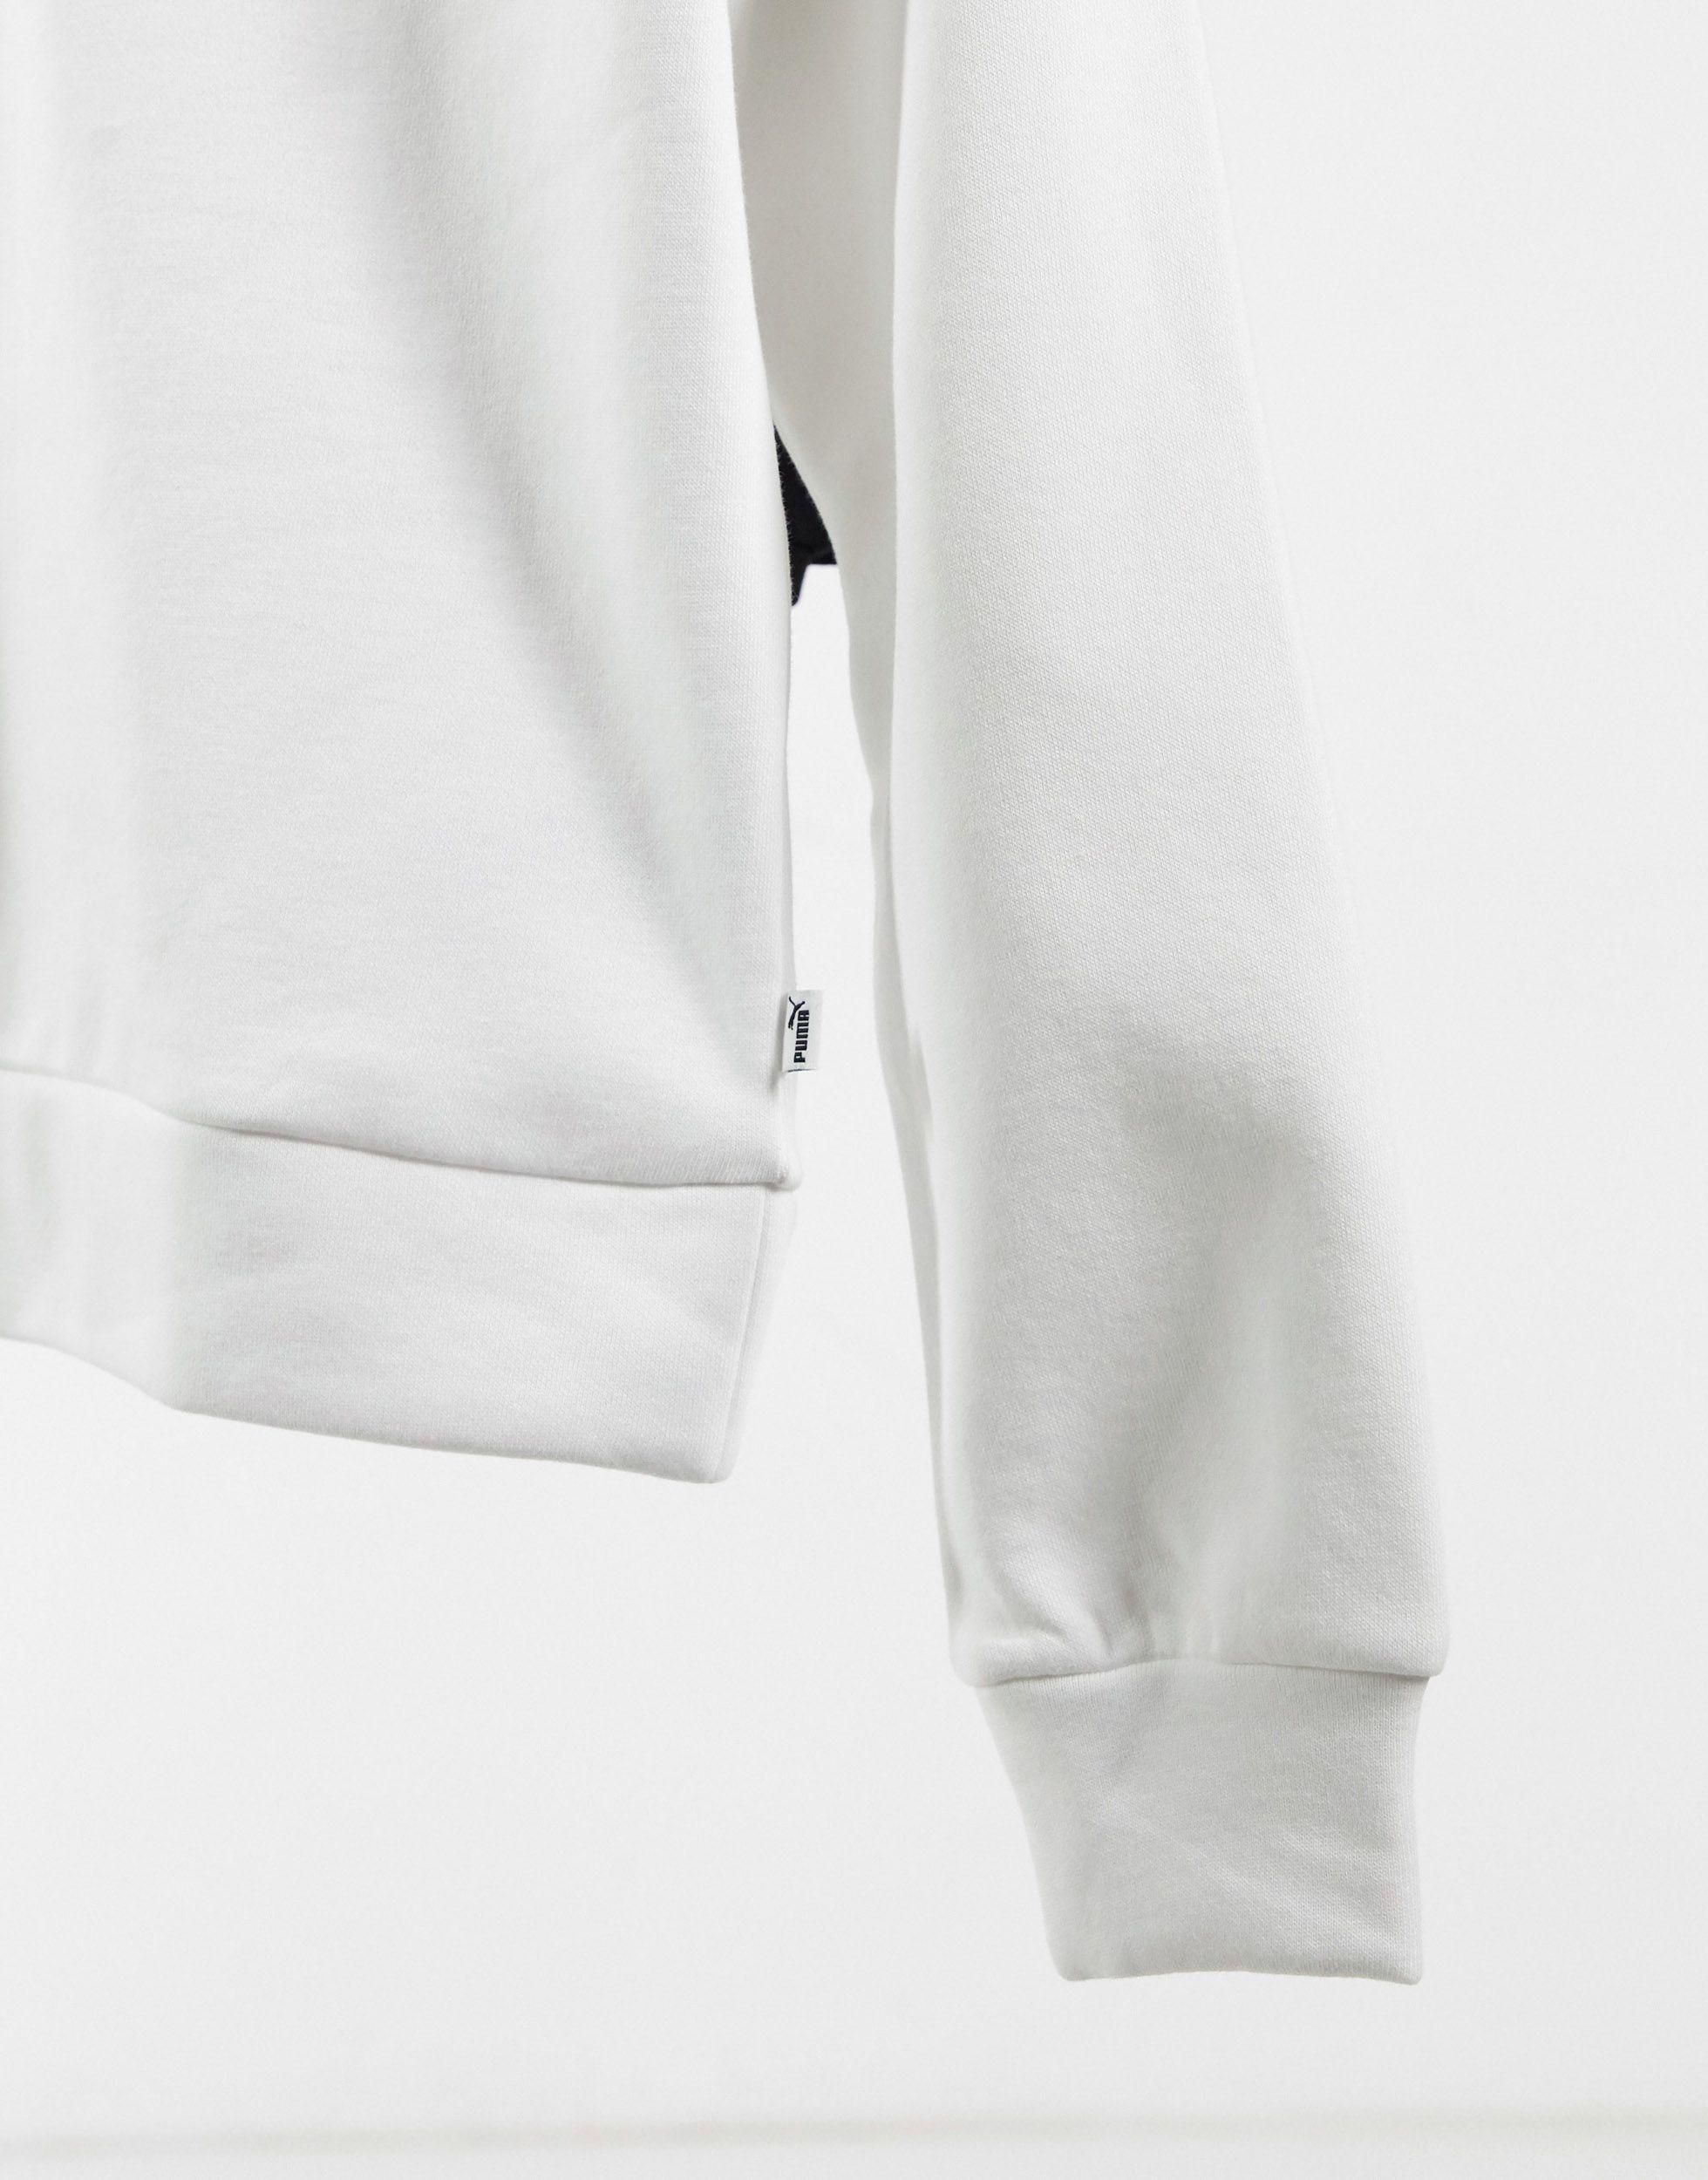 PUMA Essentials Half Zip Sweatshirt in White | Lyst